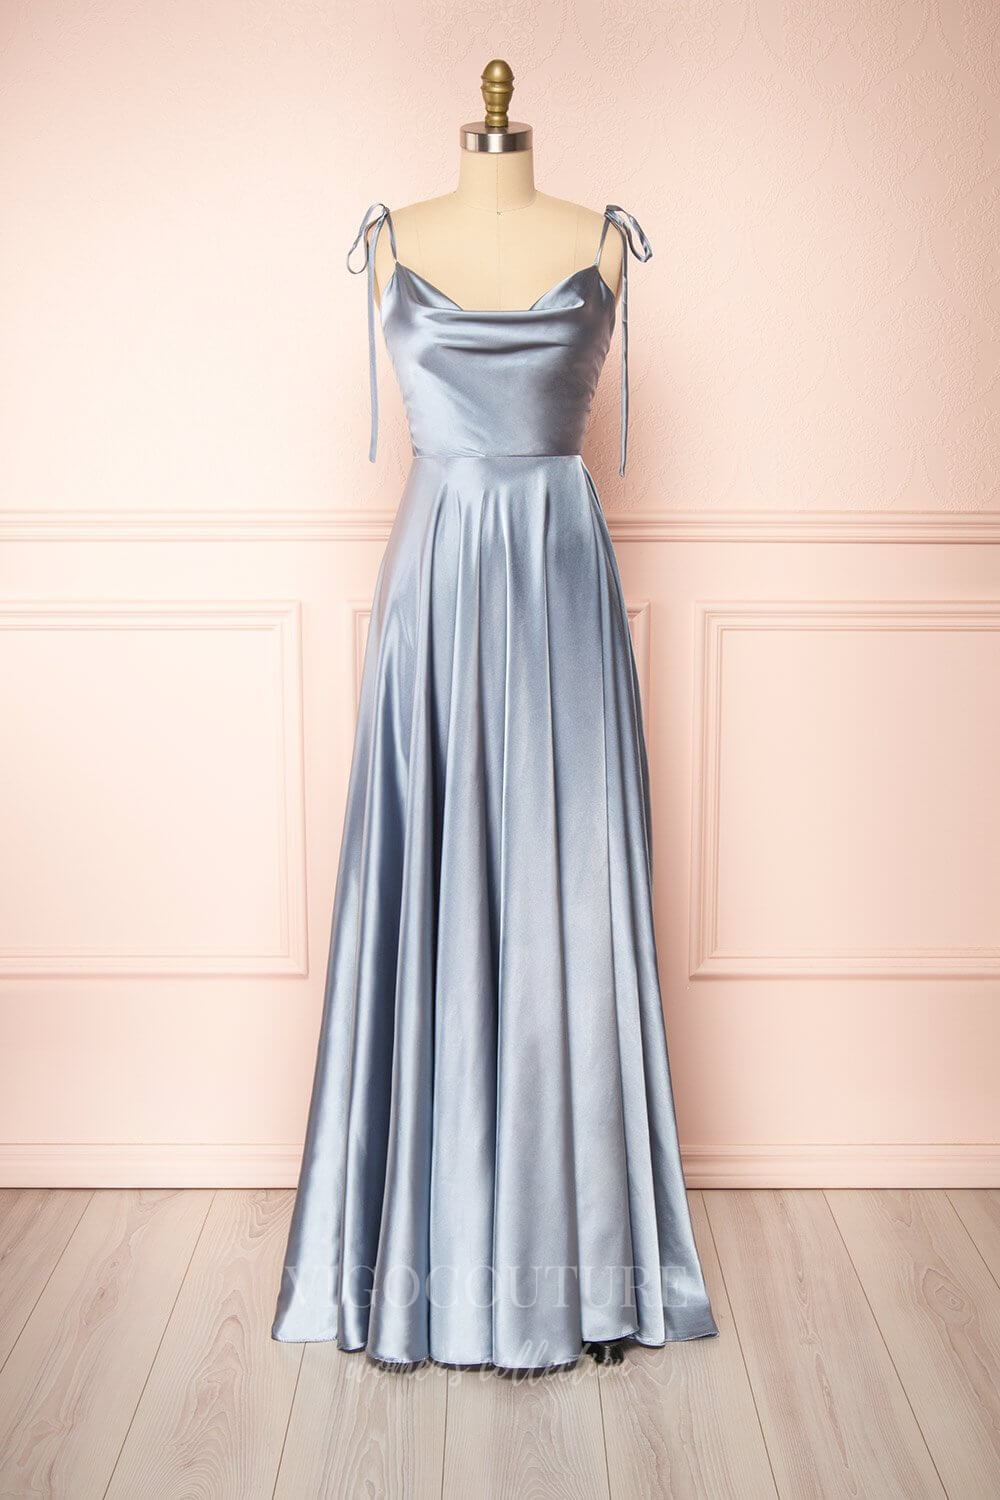 vigocouture-Silver Spaghetti Strap Prom Dress 20574-Prom Dresses-vigocouture-Silver-US2-